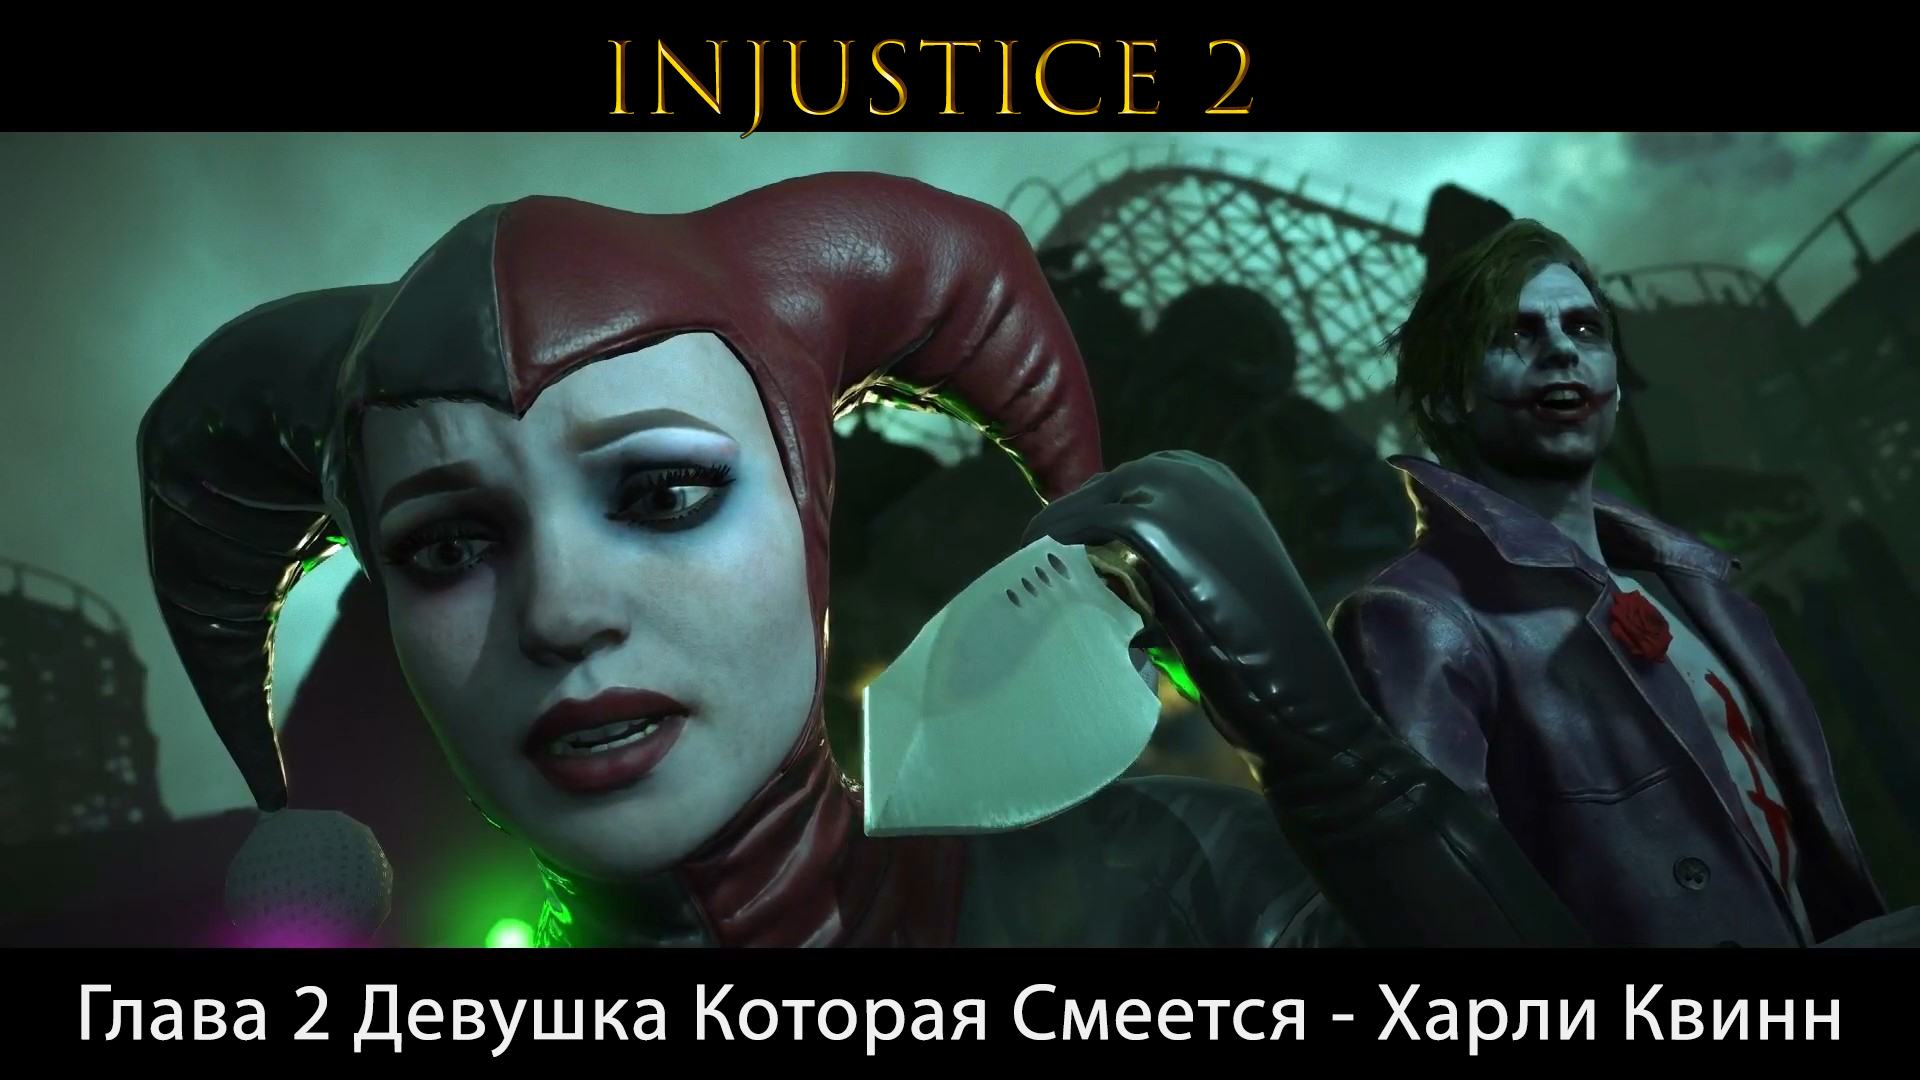 Injustice 2 - Глава 2 Девушка Которая Смеется - Харли Квинн (Сюжет) (Gameplay)